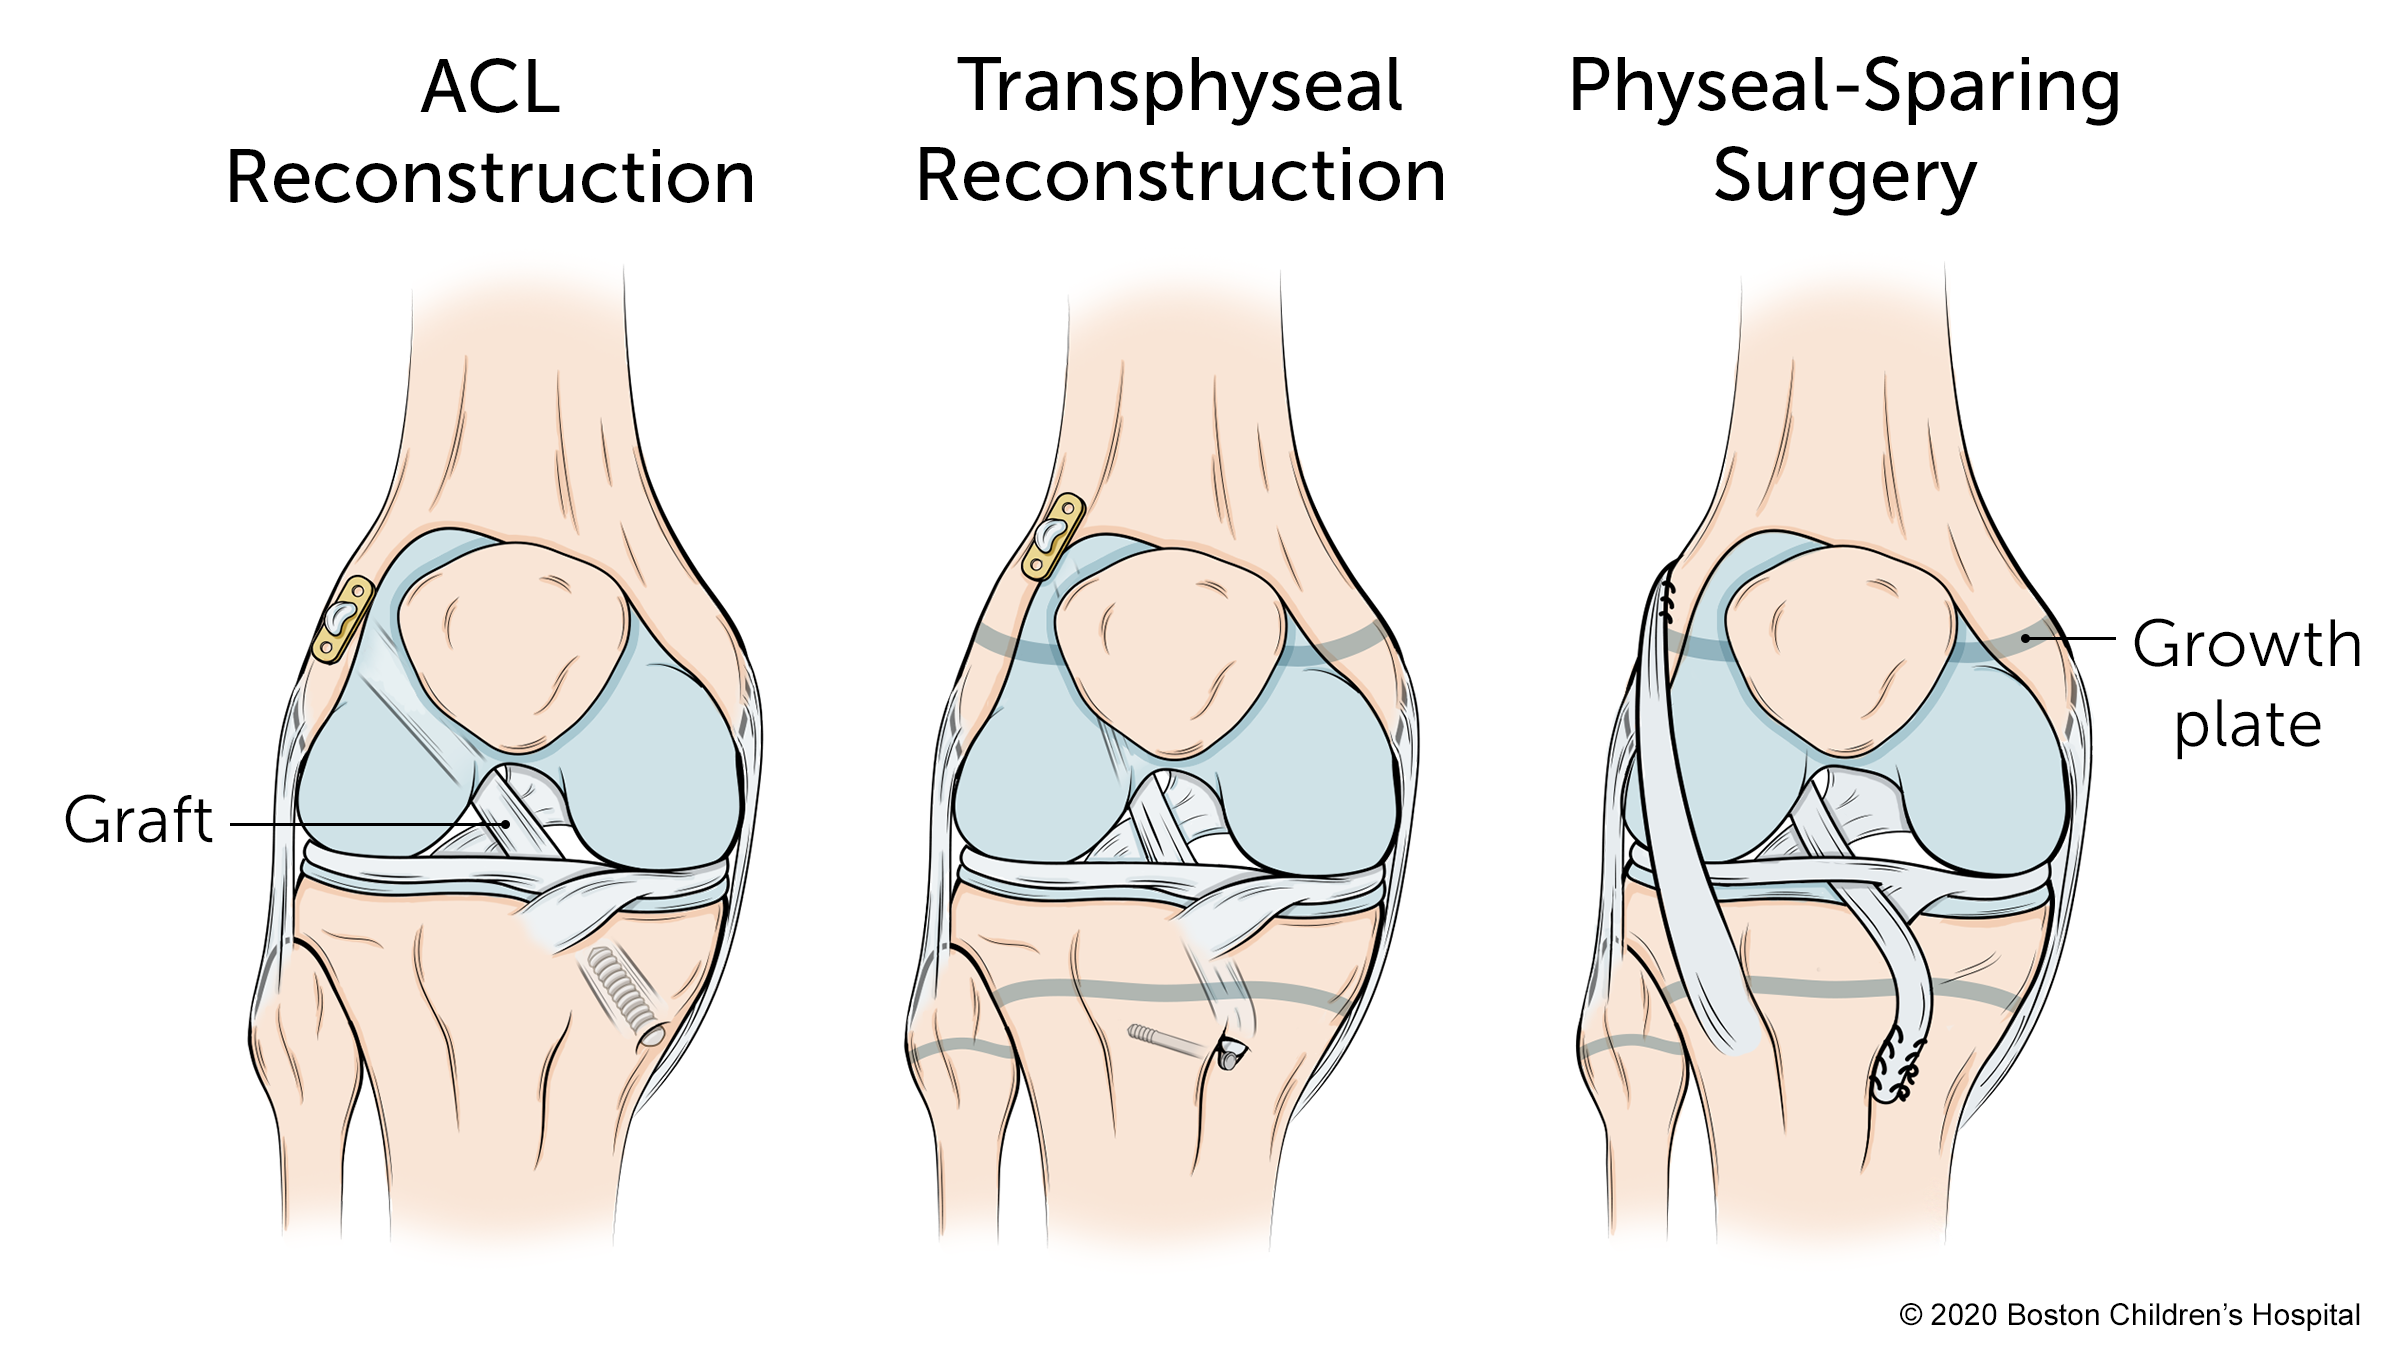 有三种手术类型:前交叉韧带重建、椎间关节重建和保留骨的手术。